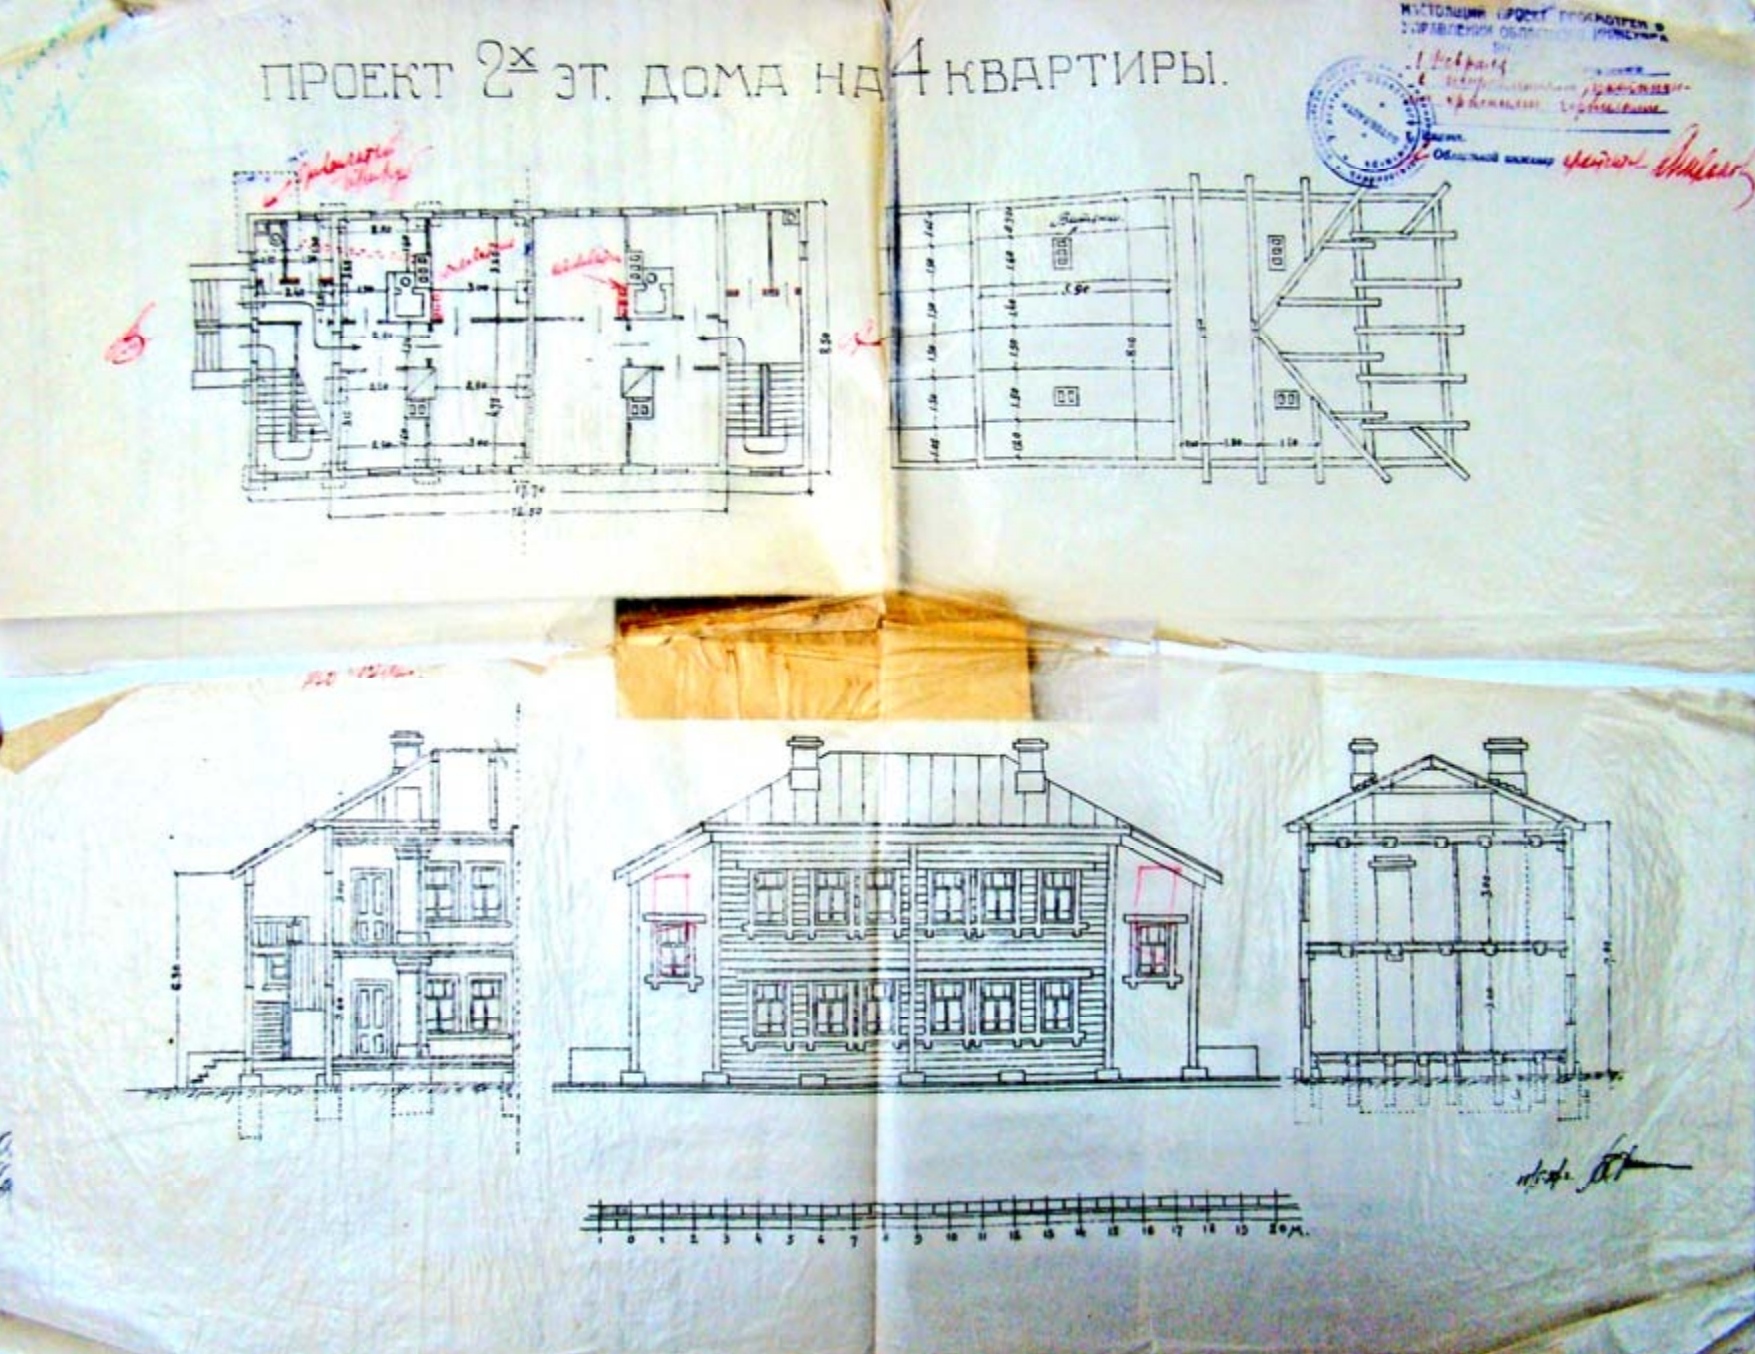 Проект типового деревянного, двухэтажного, жилого дома для Ижевска. Арх. З. Н. Миронова 1926—1927 гг.